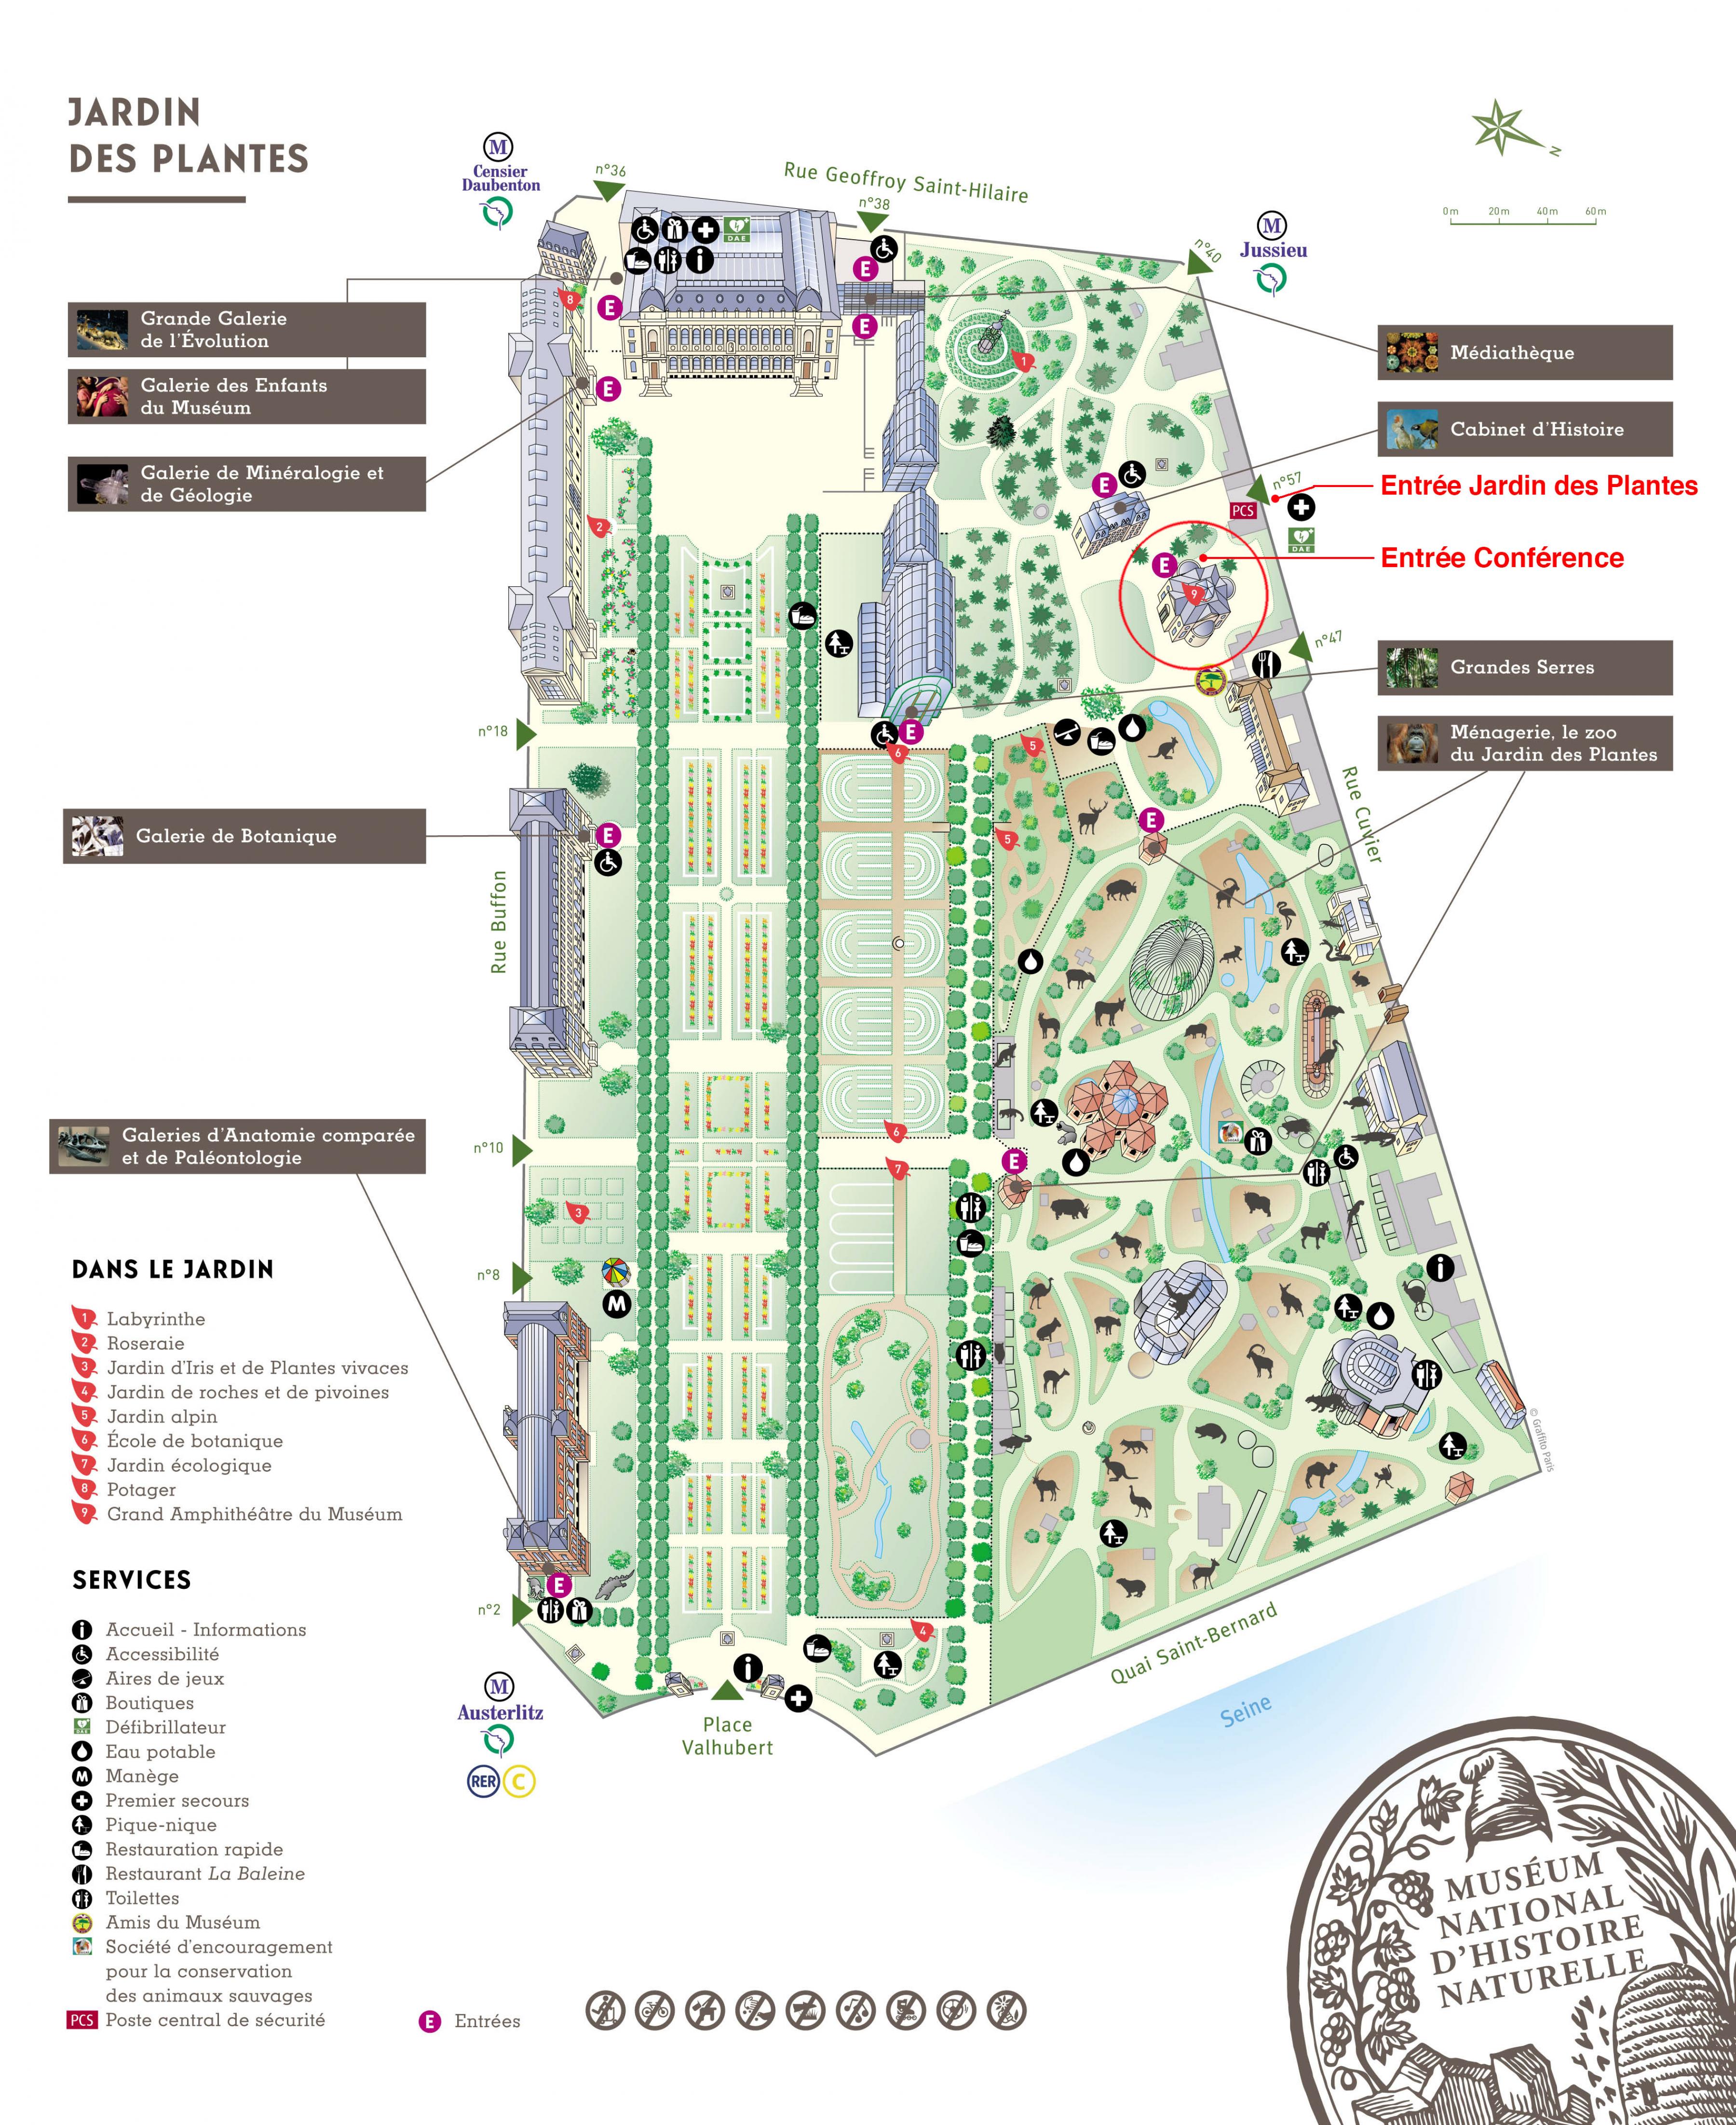 Jardin des Plantes-kort Kort over Den botaniske Jardin des Plantes (Frankrig)